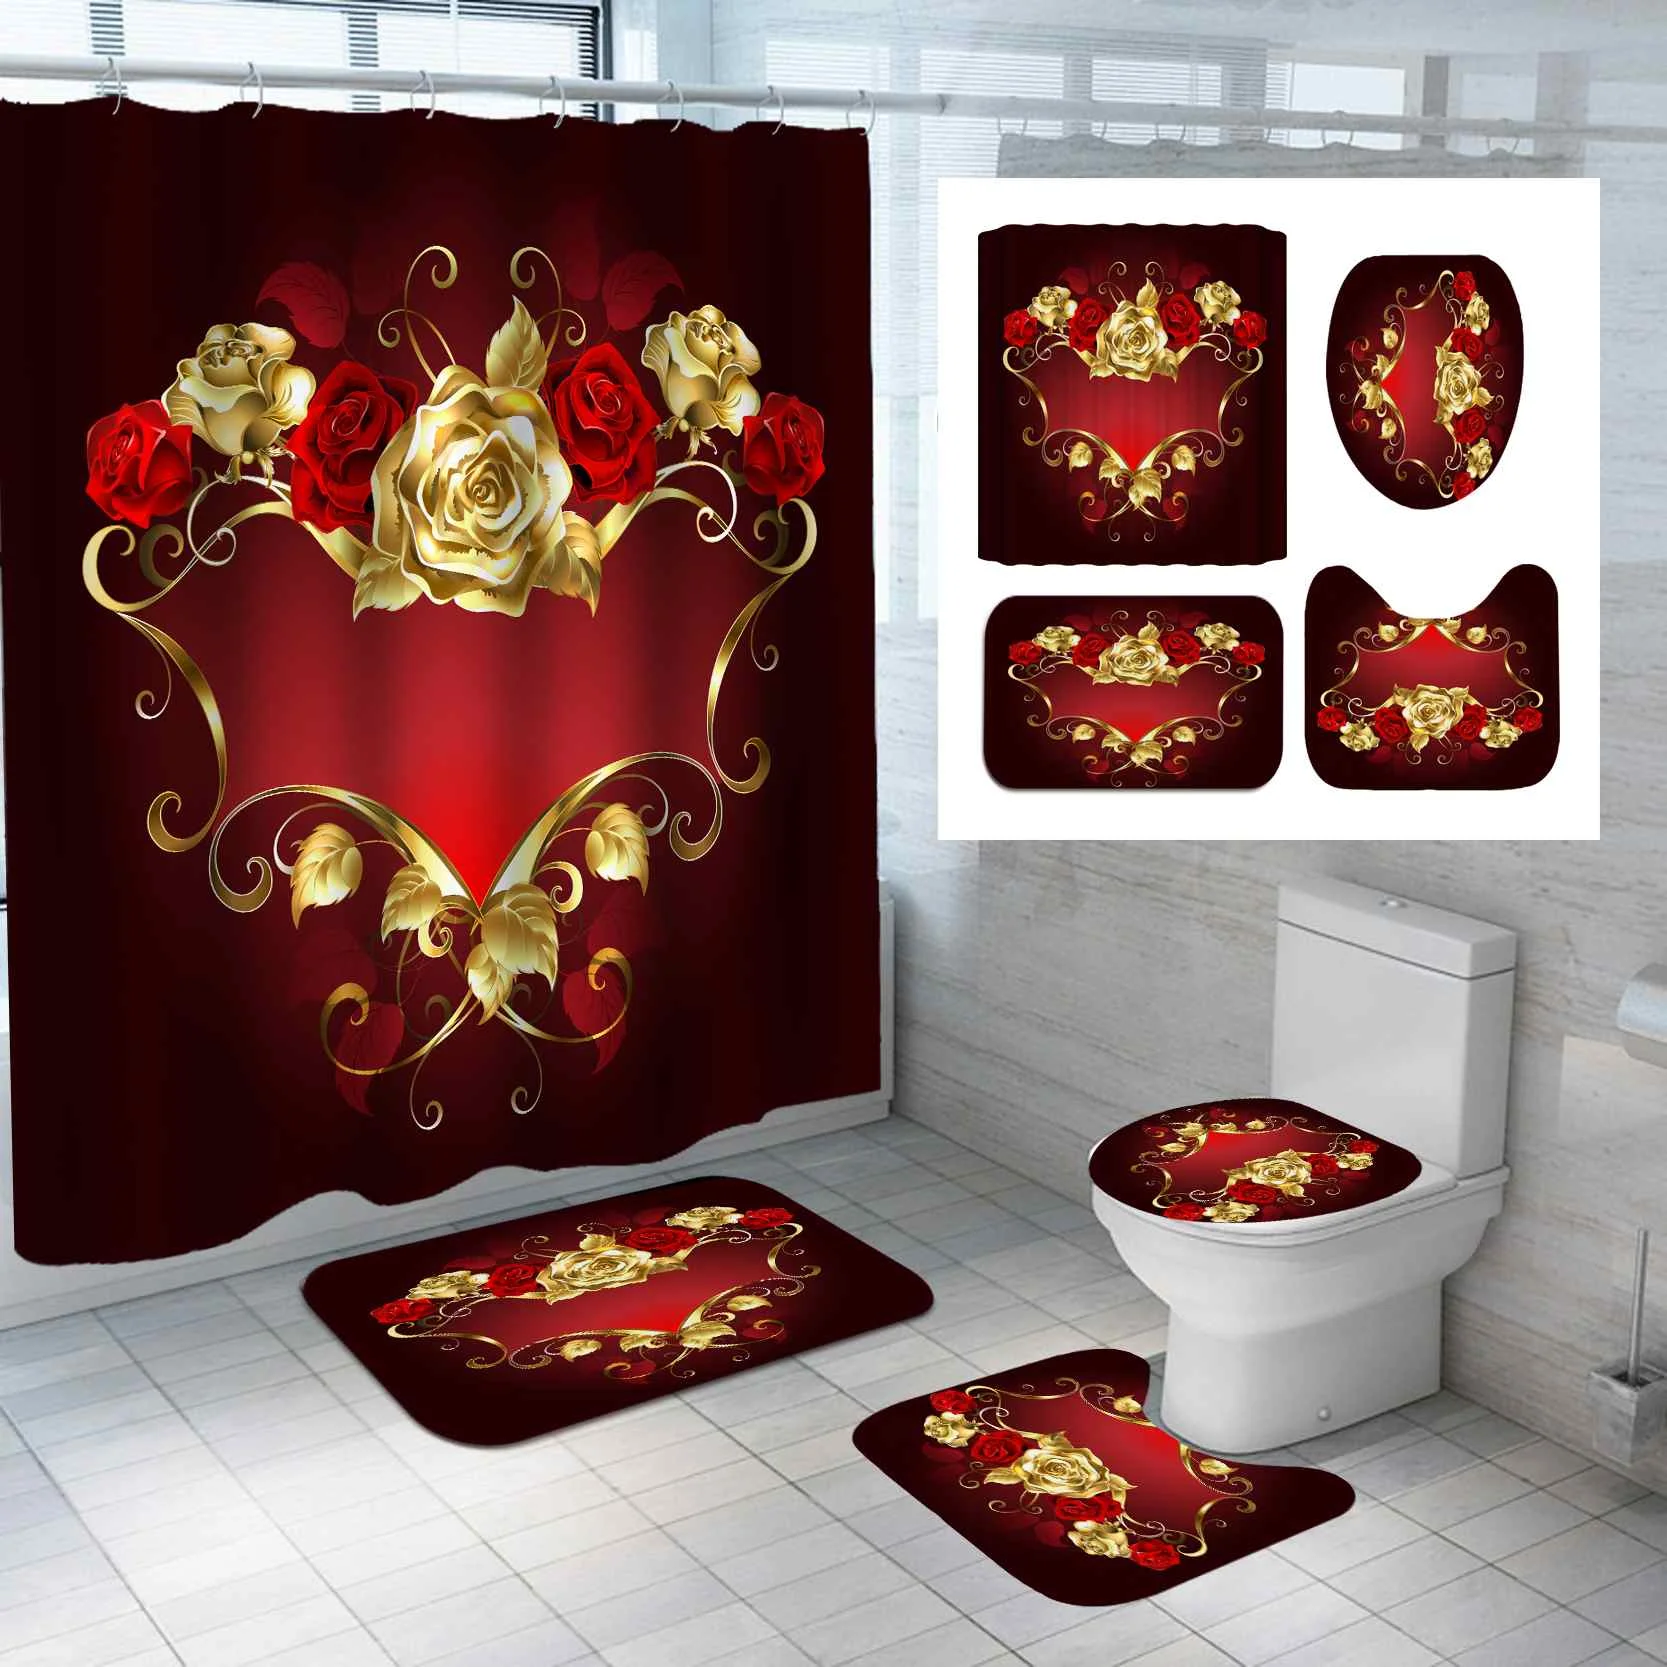 

Водонепроницаемая шторка для душа, 3D занавеска для ванной с рисунком роз, Противоскользящий коврик для ванной, ковер, крышка для туалета, до...